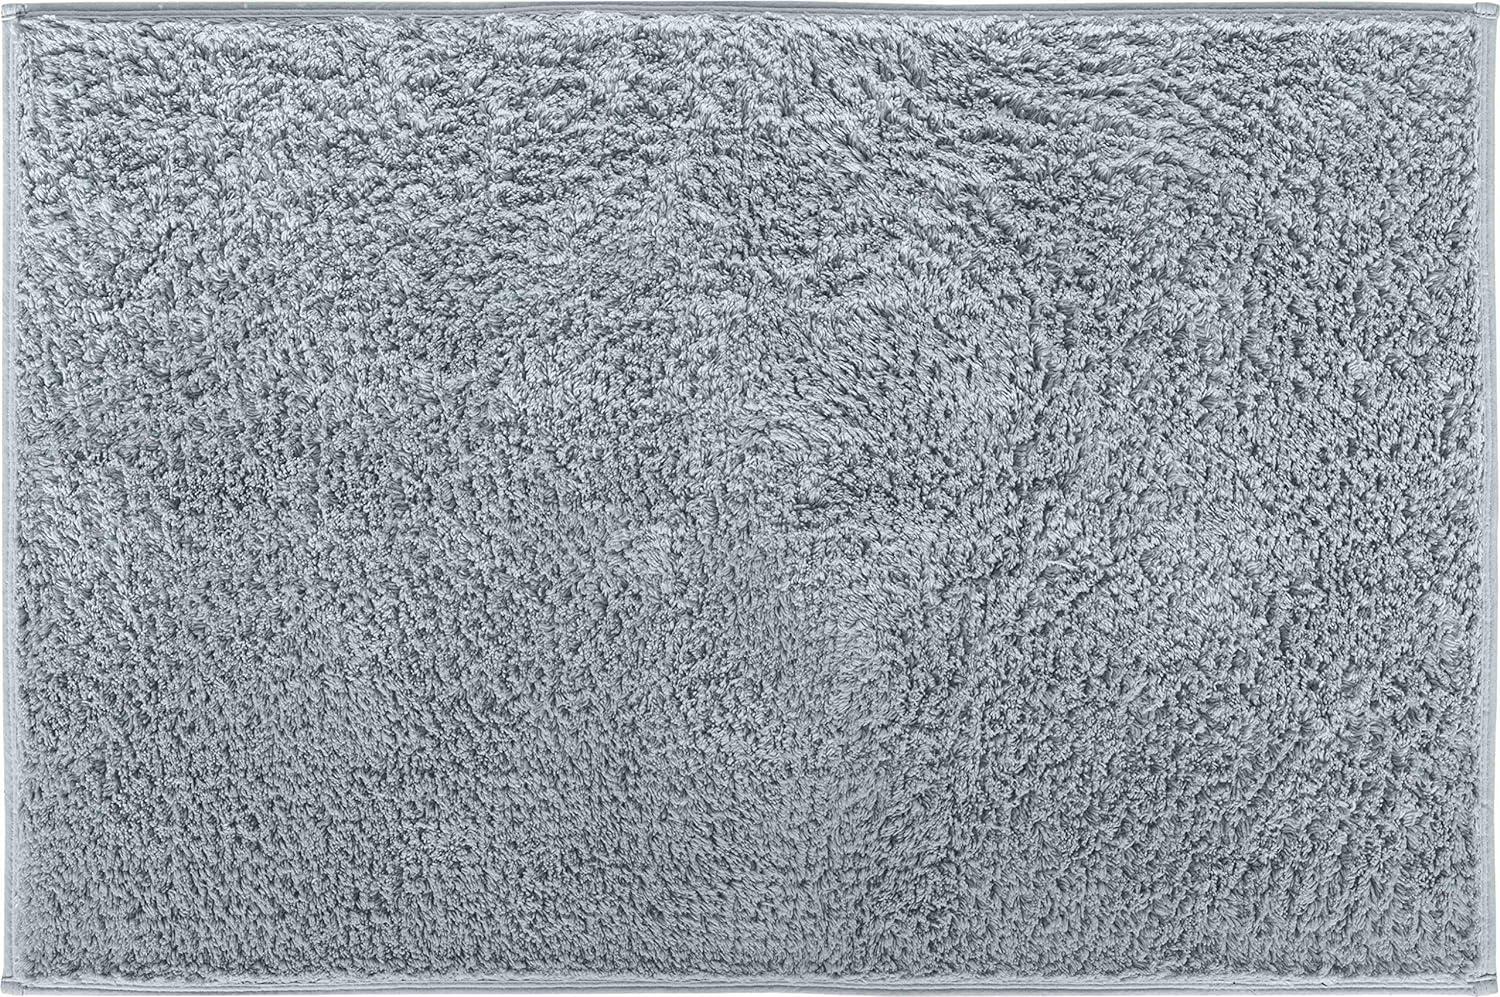 Grund Marla Badteppich, Baumwolle, Graugrün, 60x90 cm Bild 1